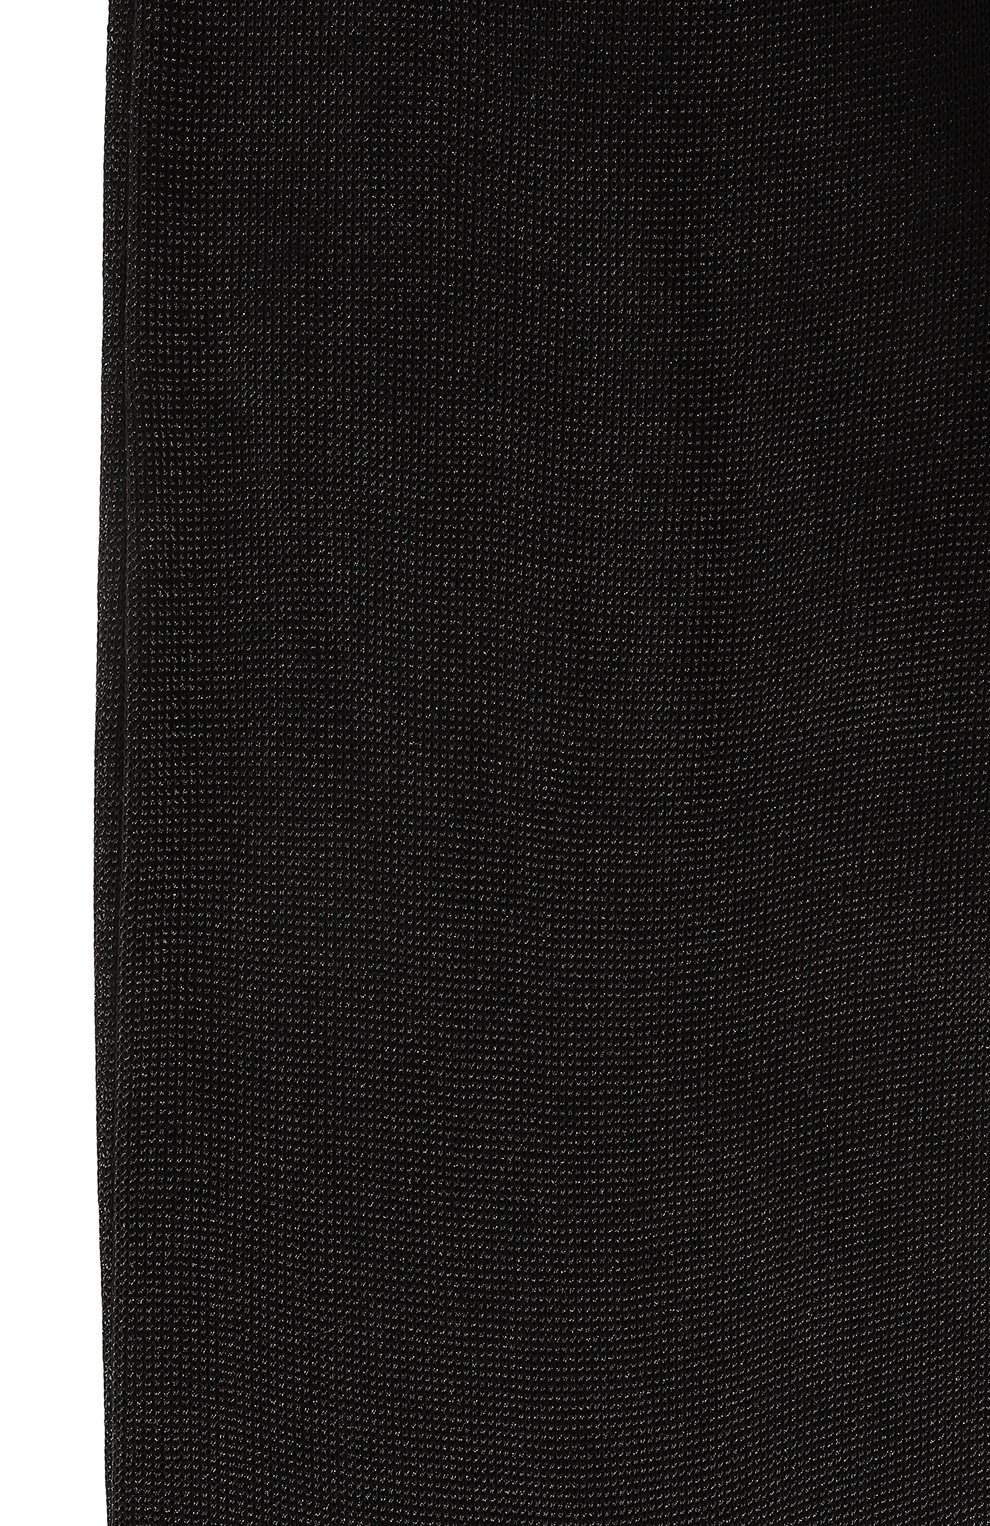 Женские хлопковые носки GUCCI черного цвета, арт. 563235 4G483 | Фото 2 (Материал внешний: Хлопок)